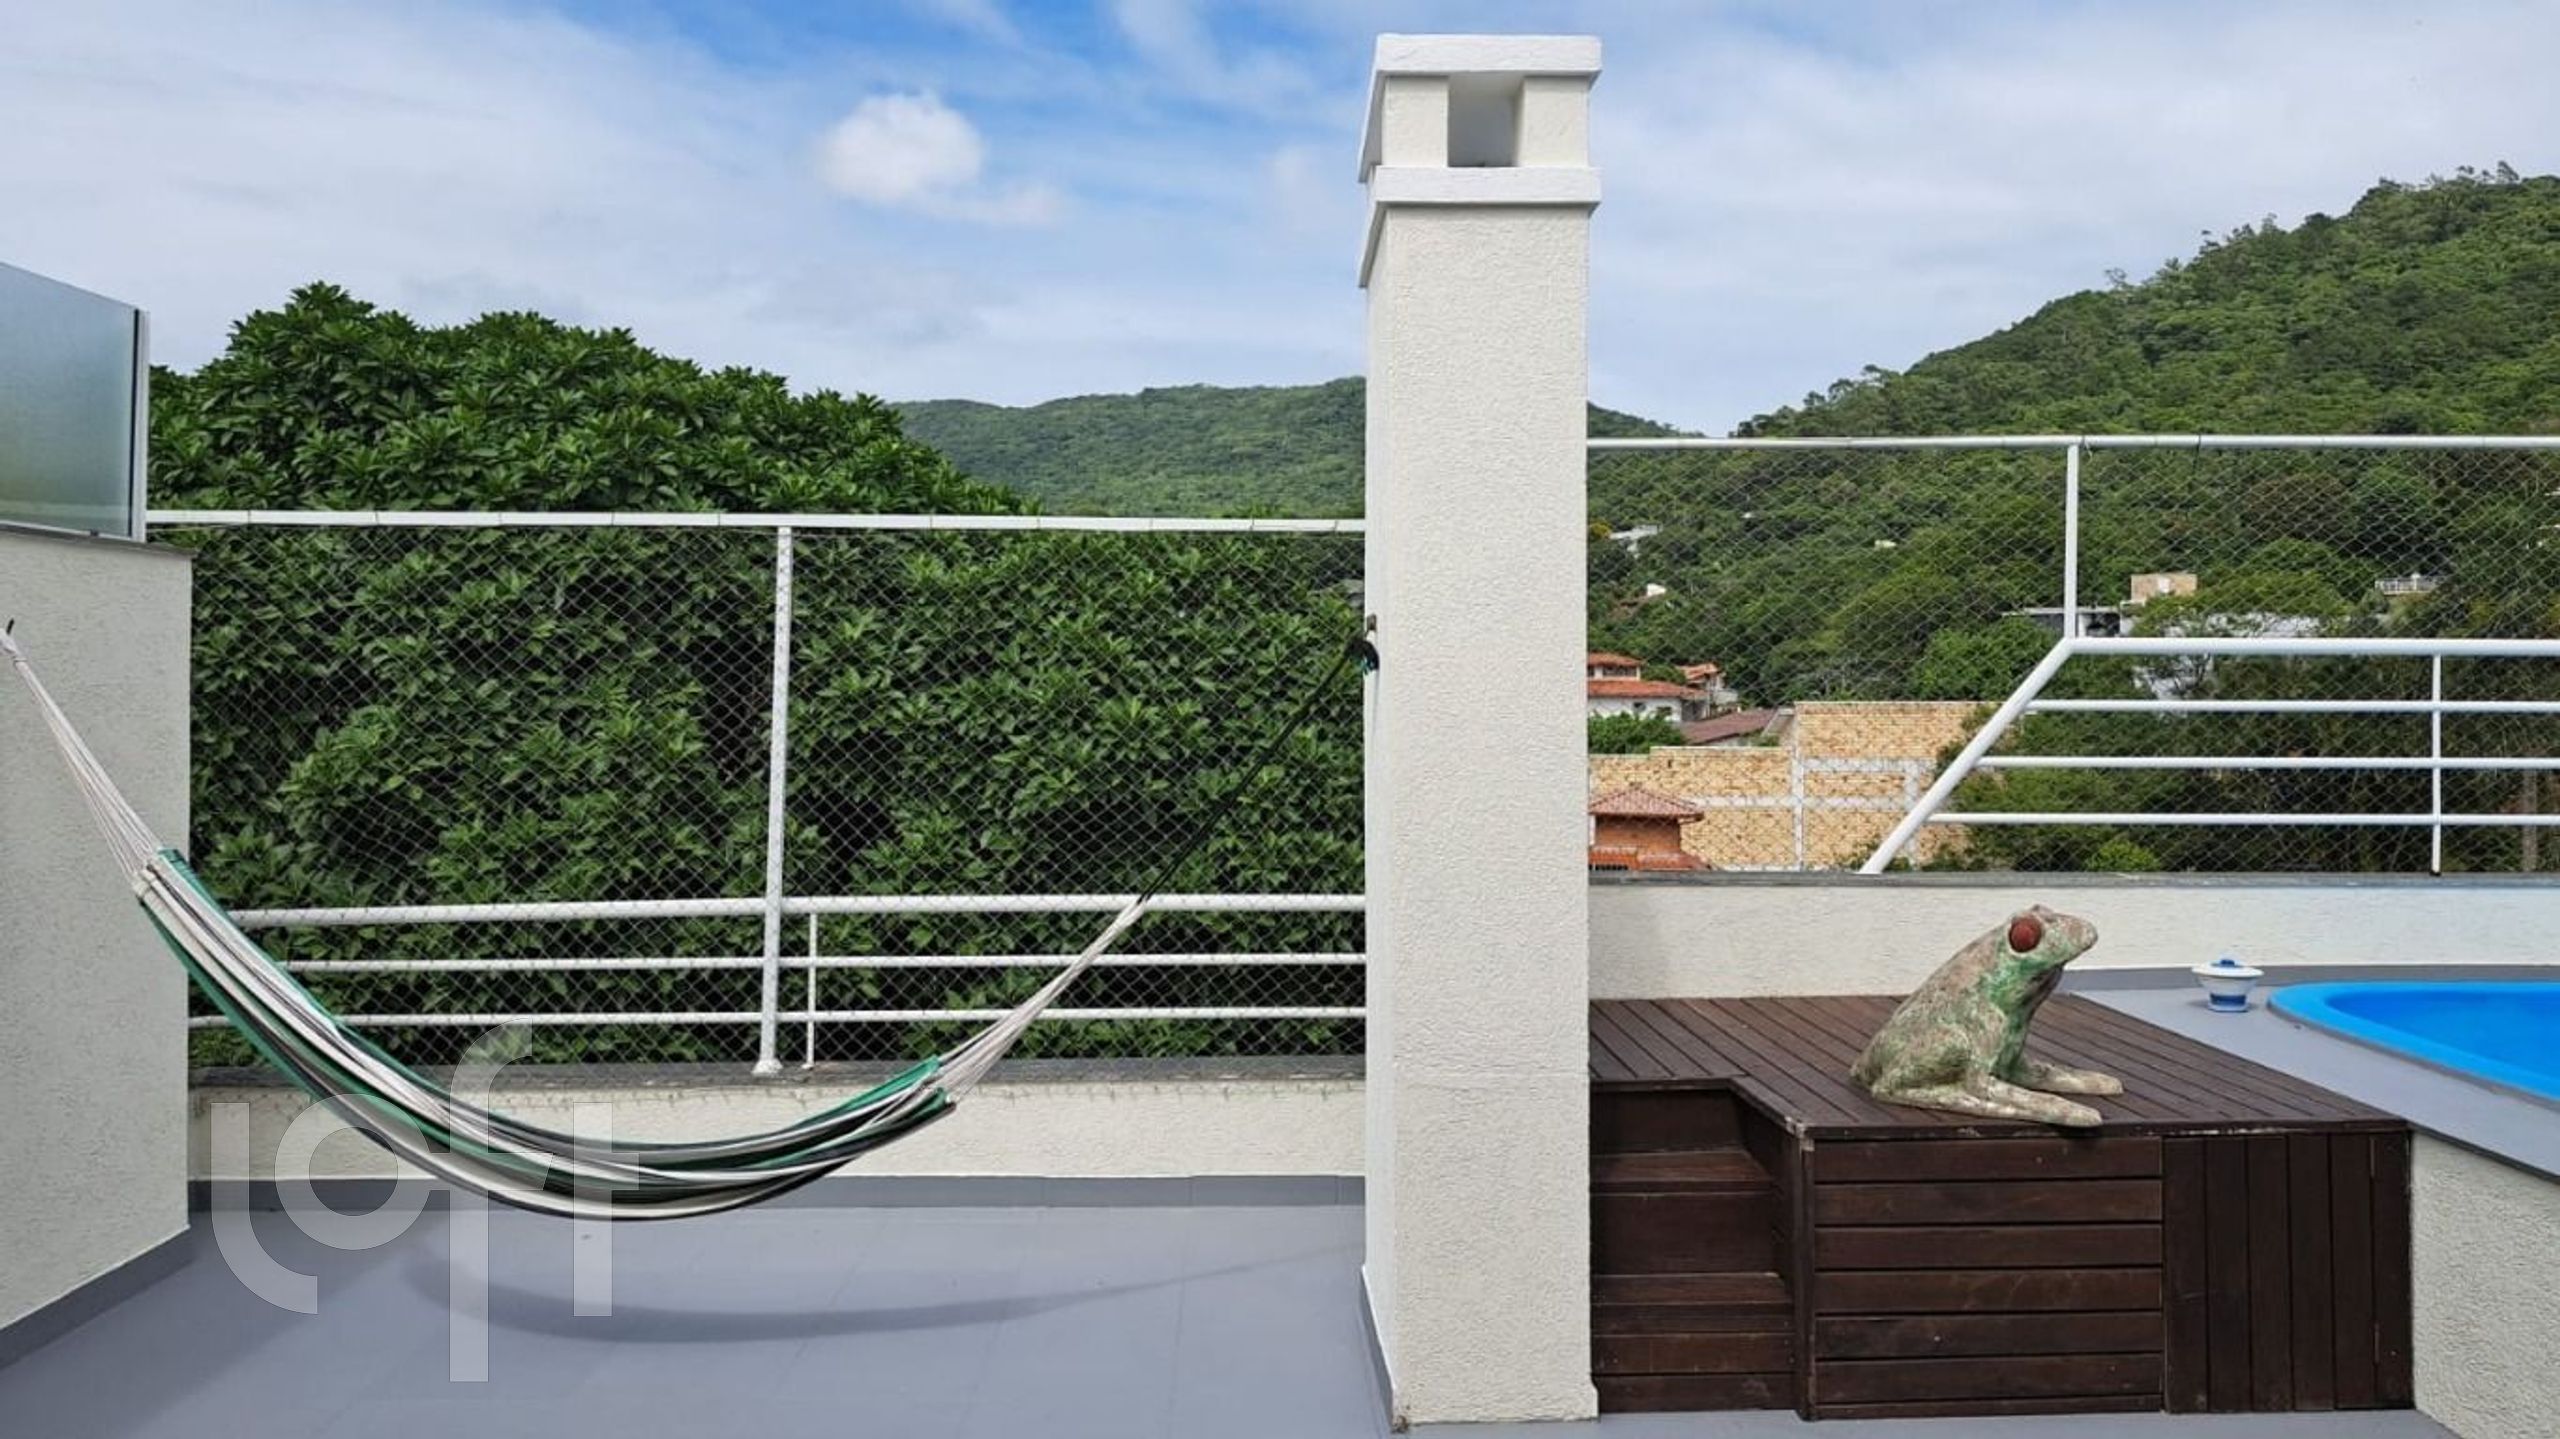 VENDA &#8211; Apartamento de 3 quartos no bairro Lagoa da Conceição, Florianópolis &#8211; PU1thokh8